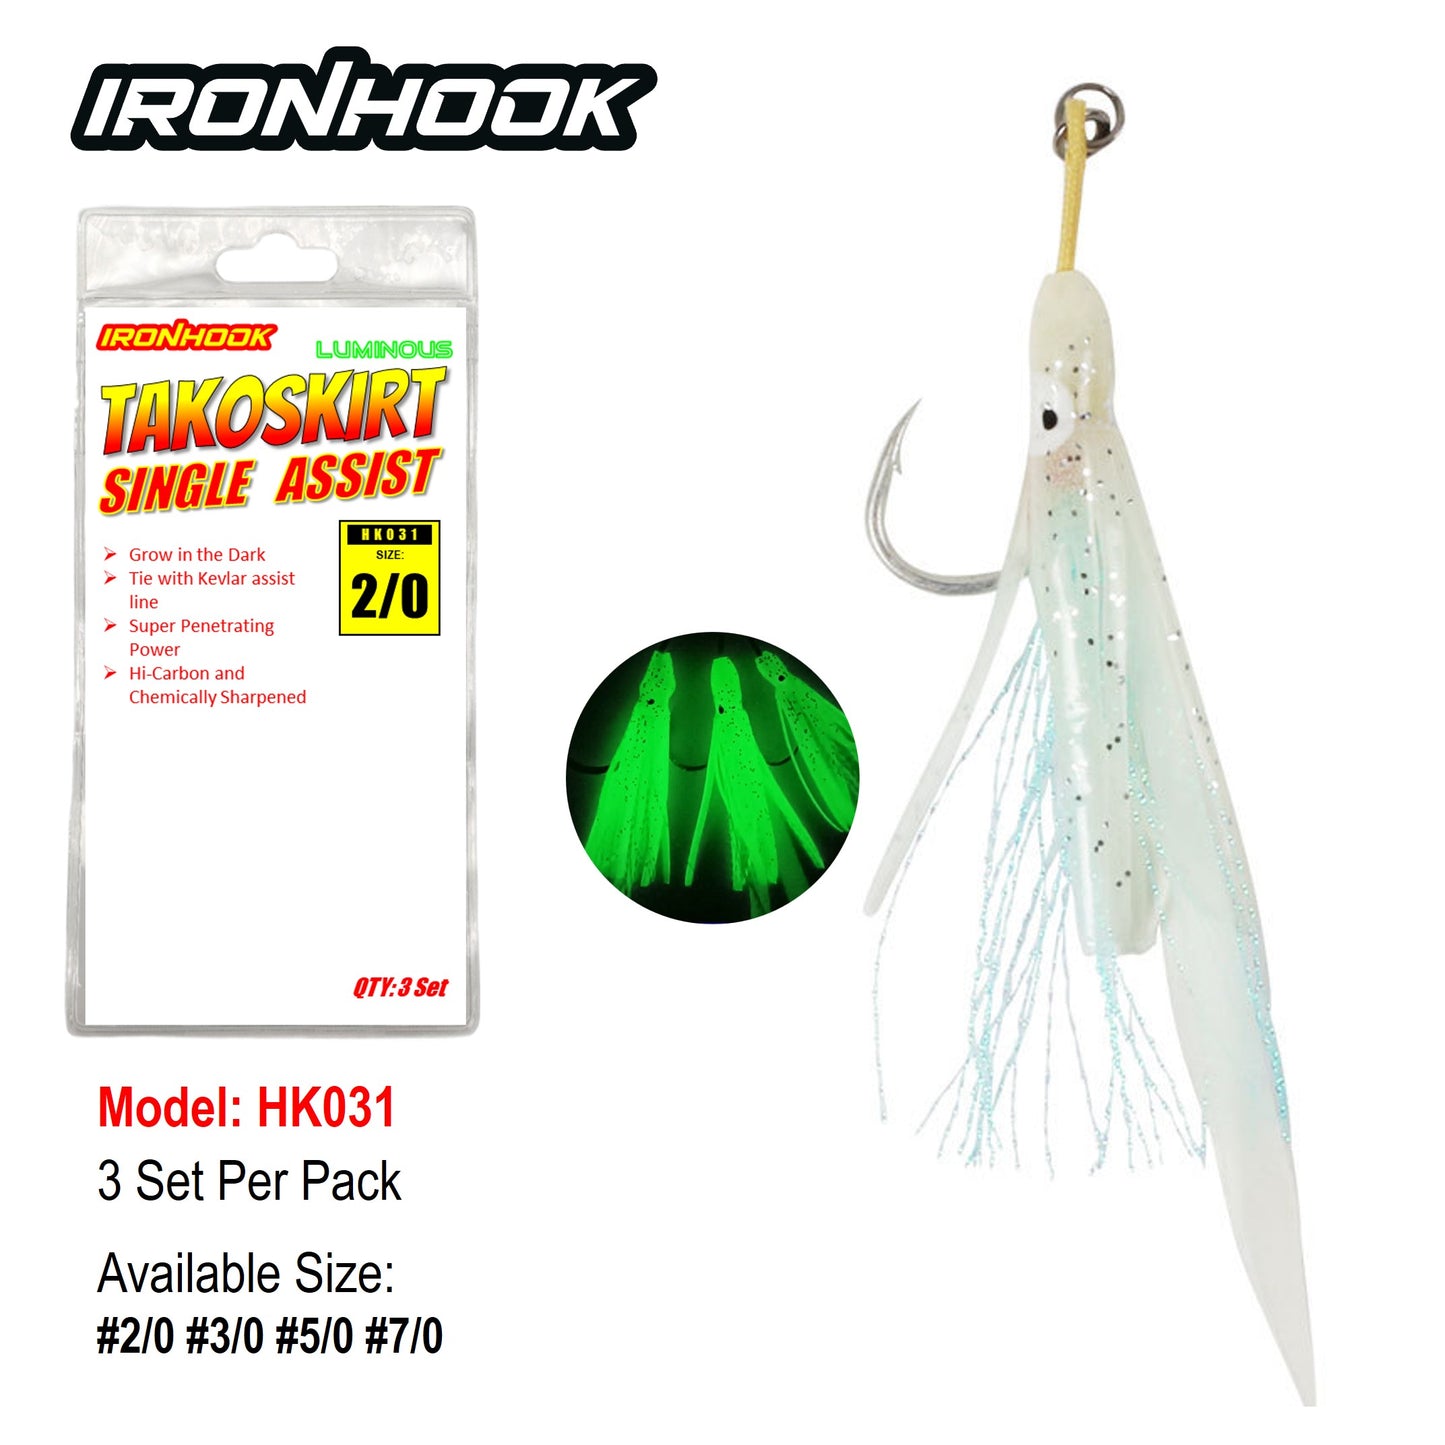 Ironhook TakoSkirt Single Assist HK031